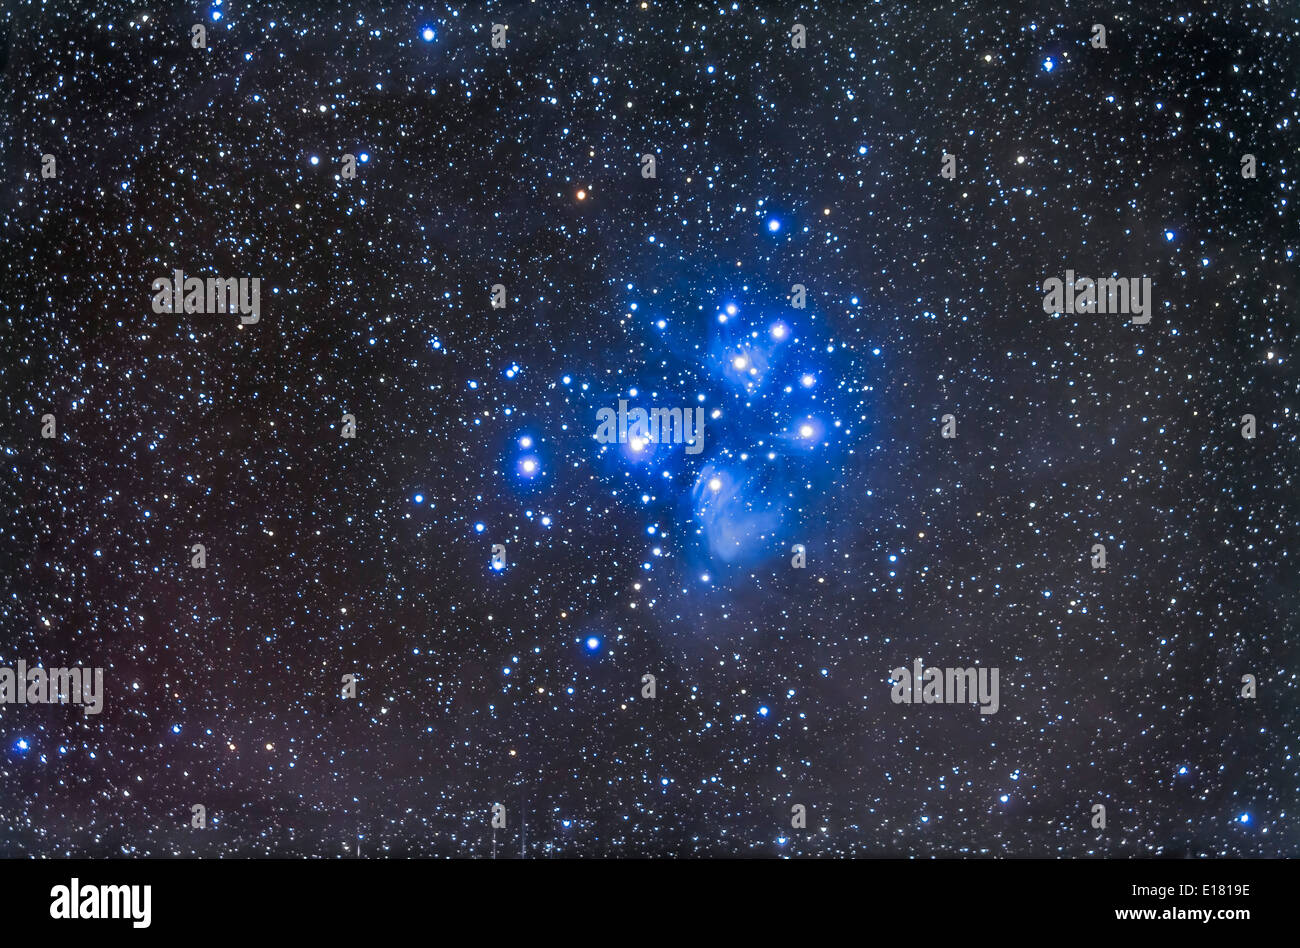 Die Plejaden-Sterne Cluster, auch bekannt als Seven Sisters oder M45 im Stier. Eine tiefe Belichtung zeigt die Reflexion-Nebel Stockfoto